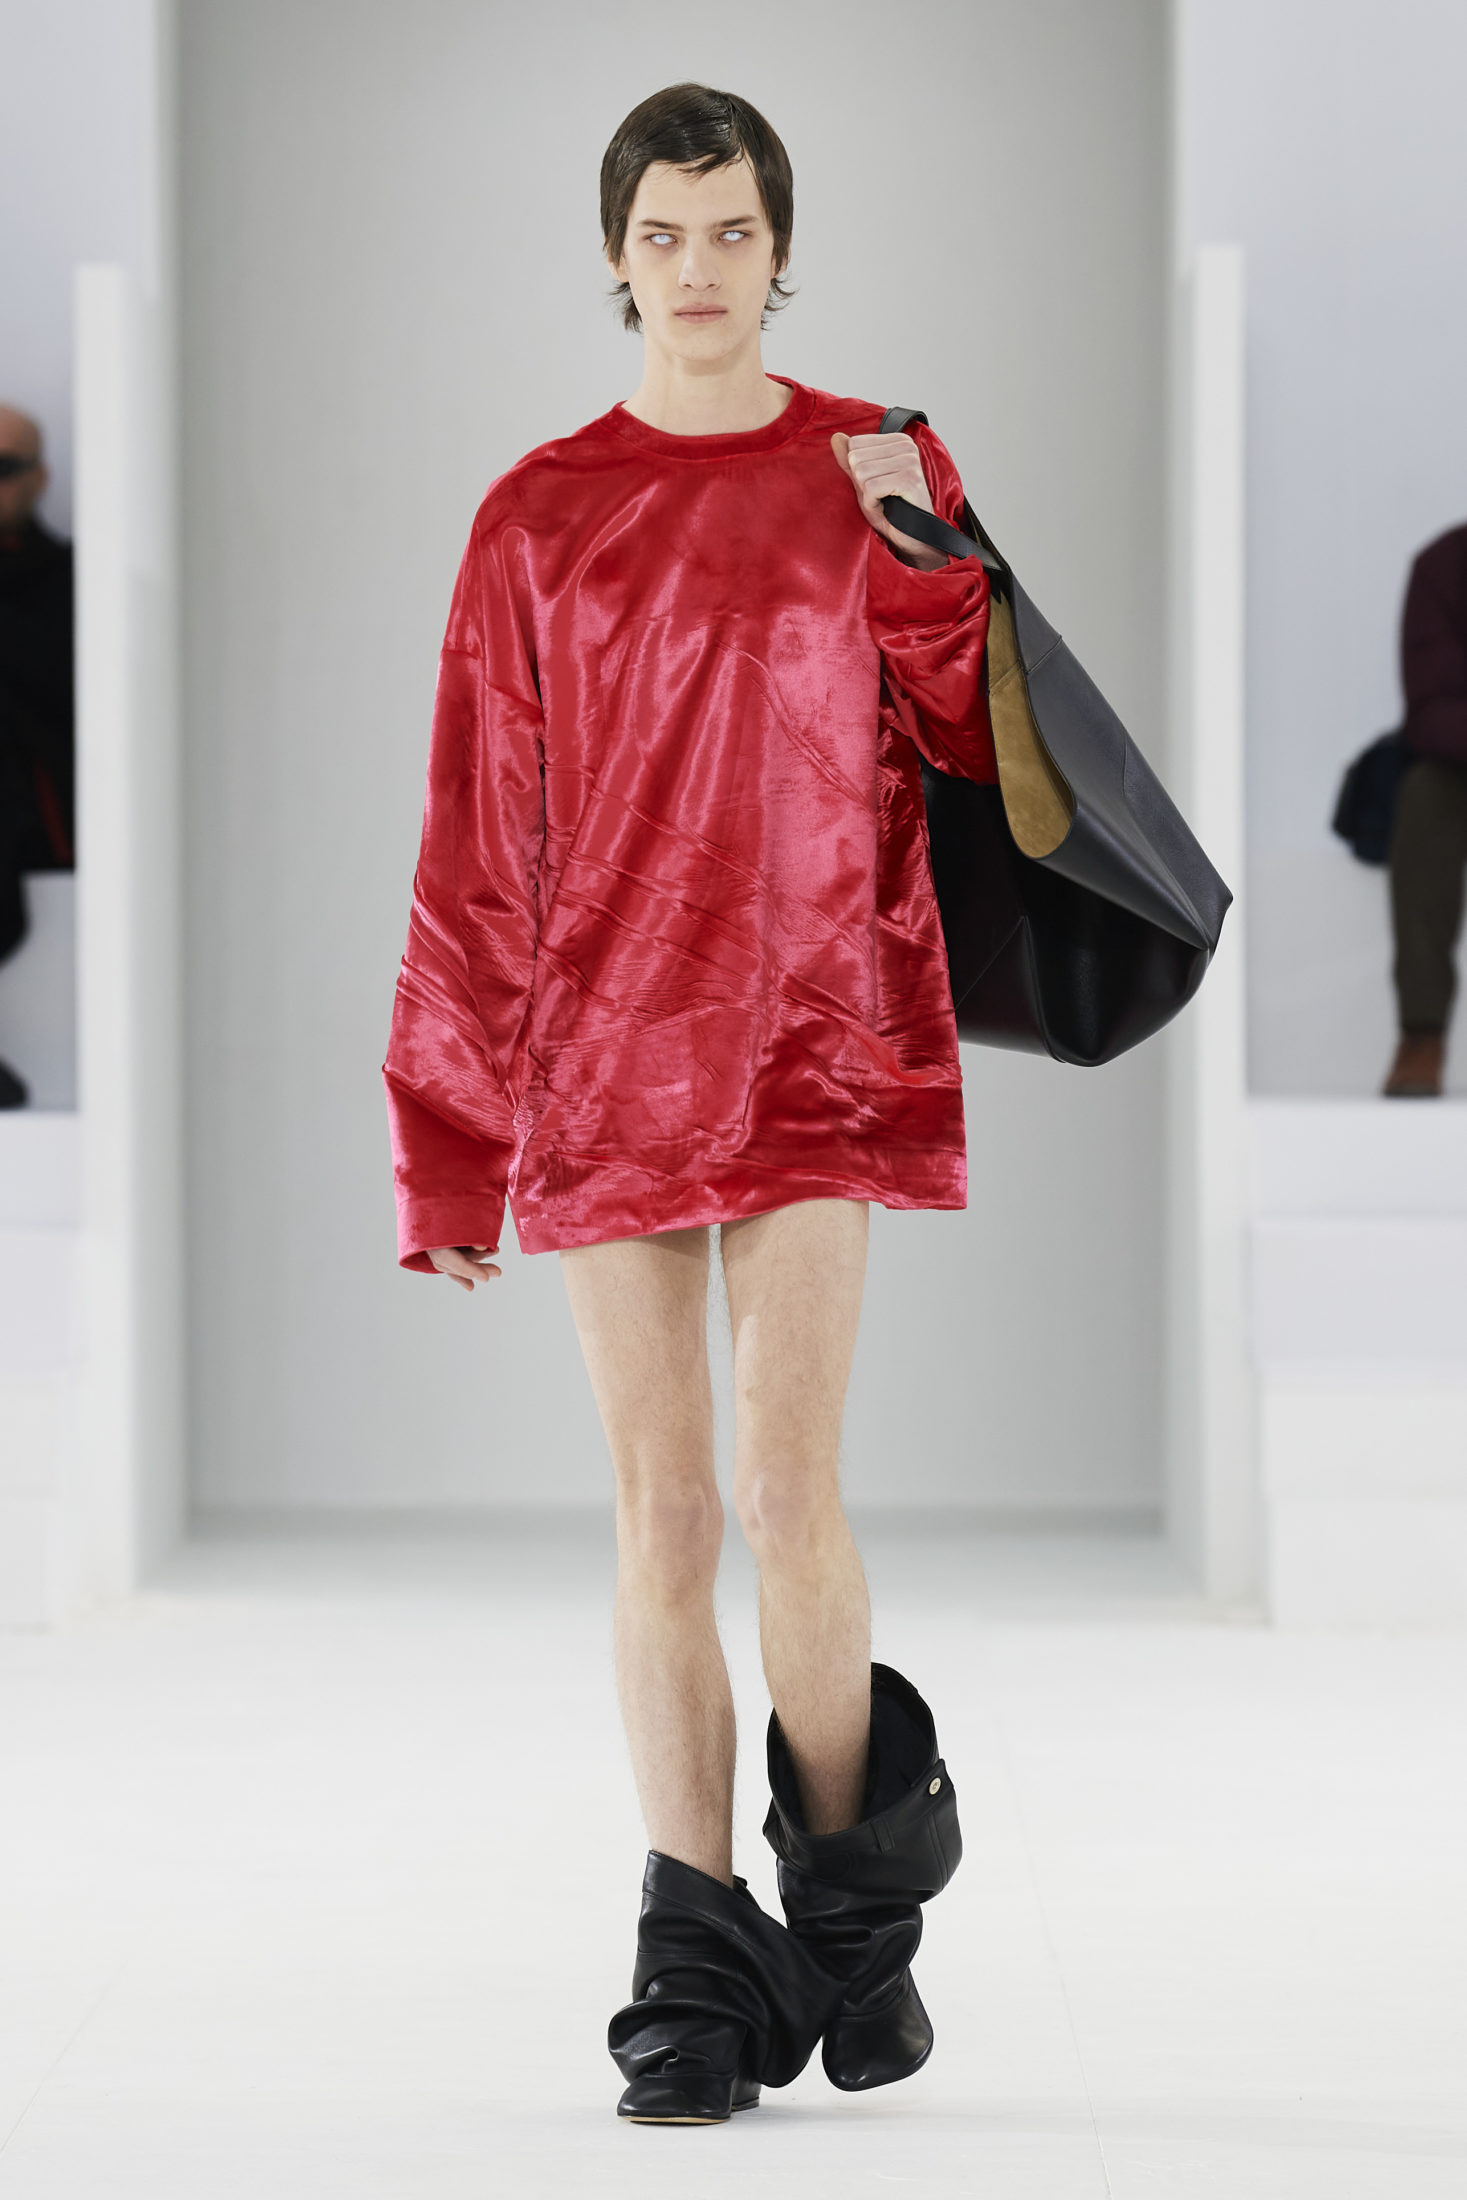 Металлические куртки, крылья и другие хайлайты пятого дня Недели мужской моды в Париже